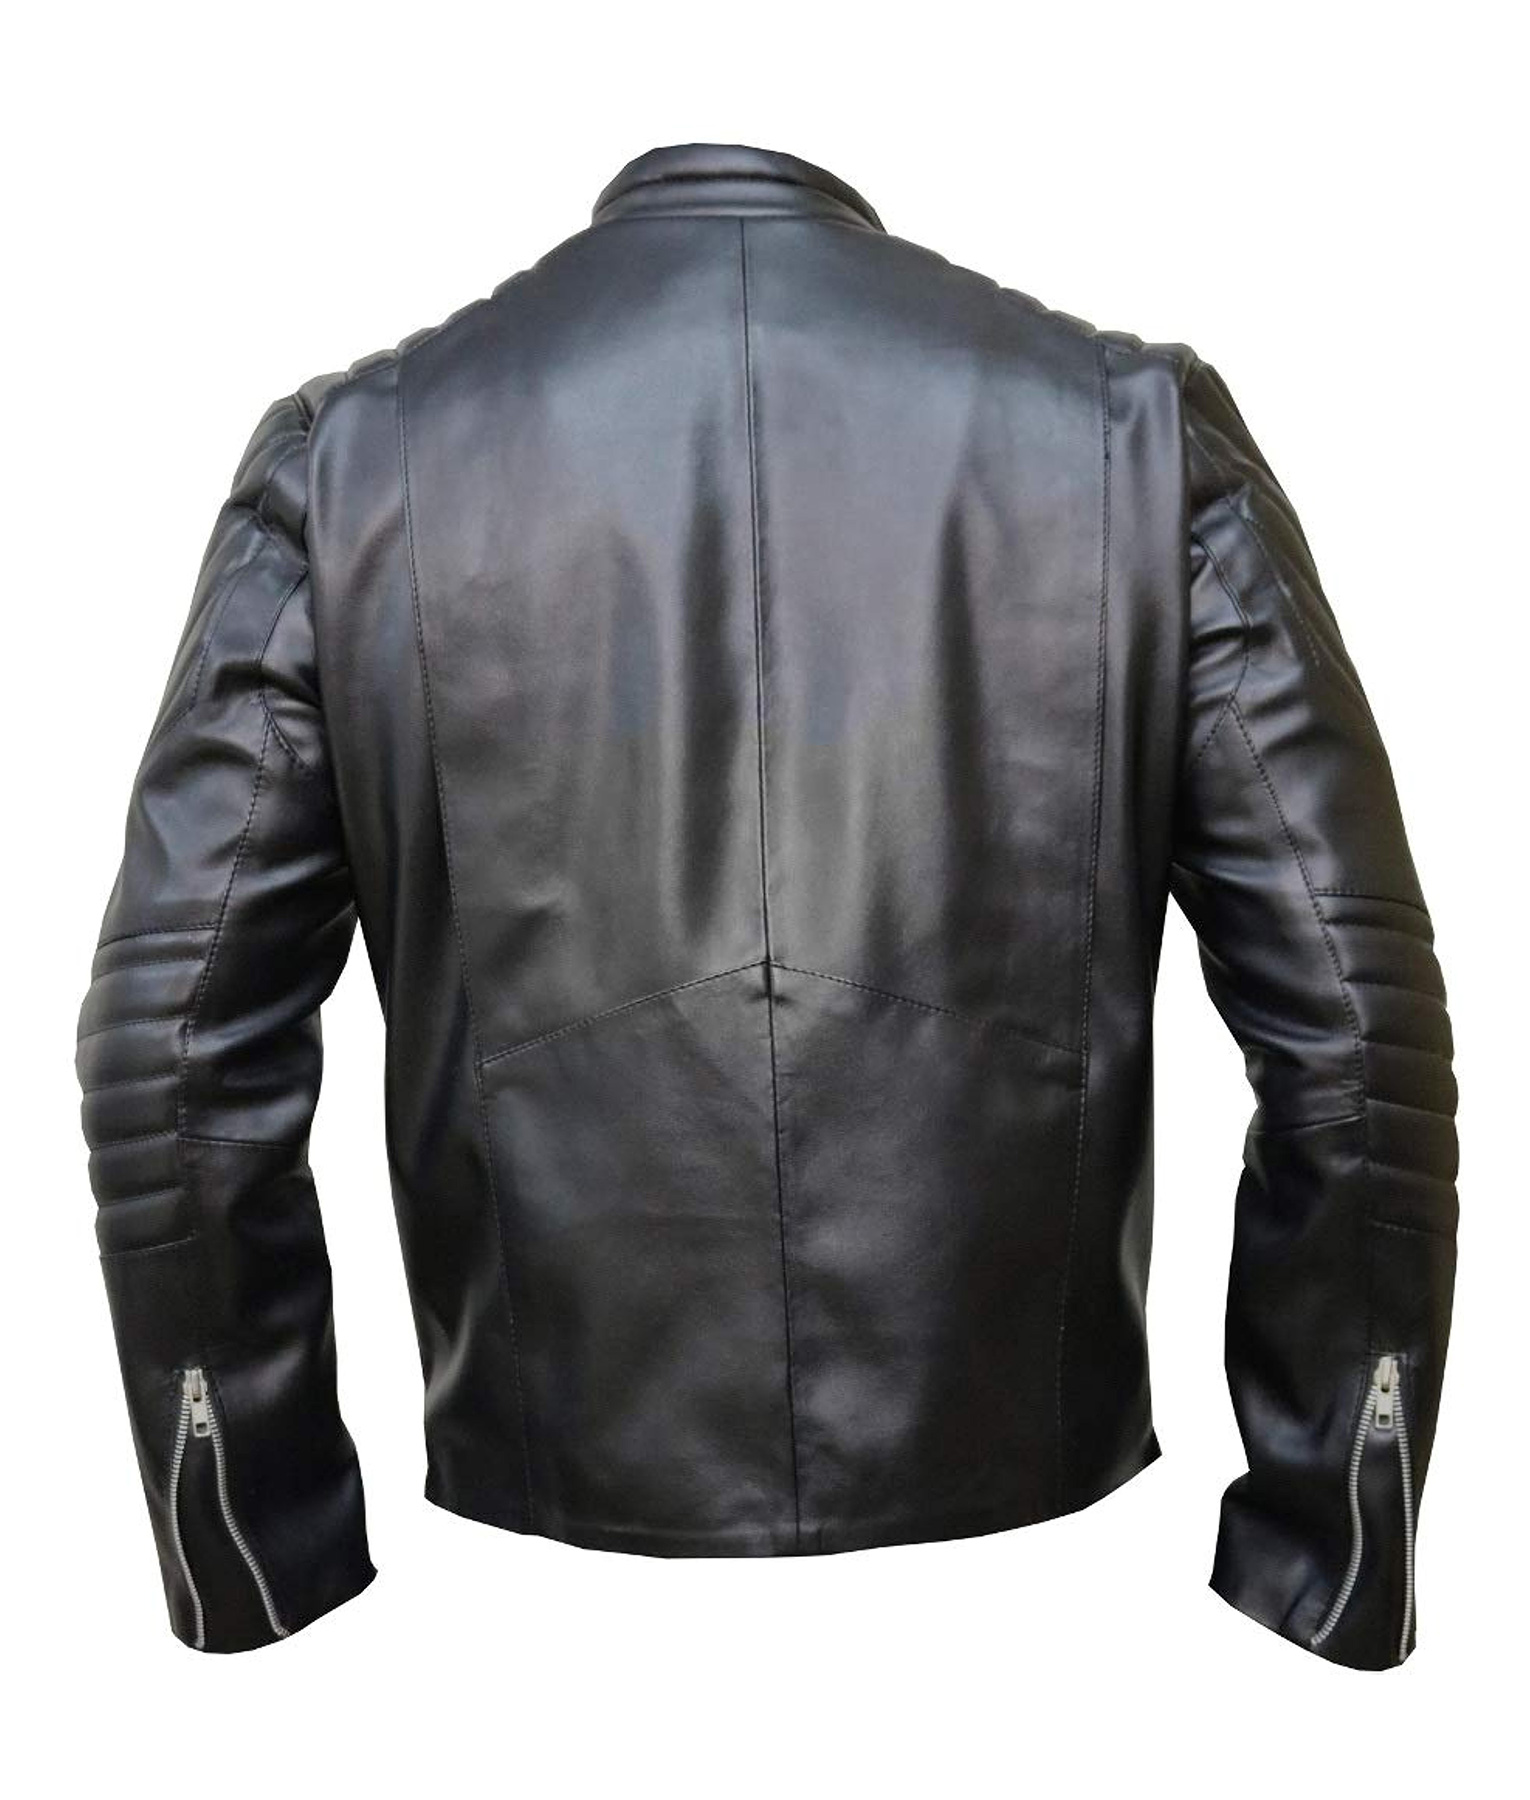 The Punisher Thomas Jane Black Leather Jacket